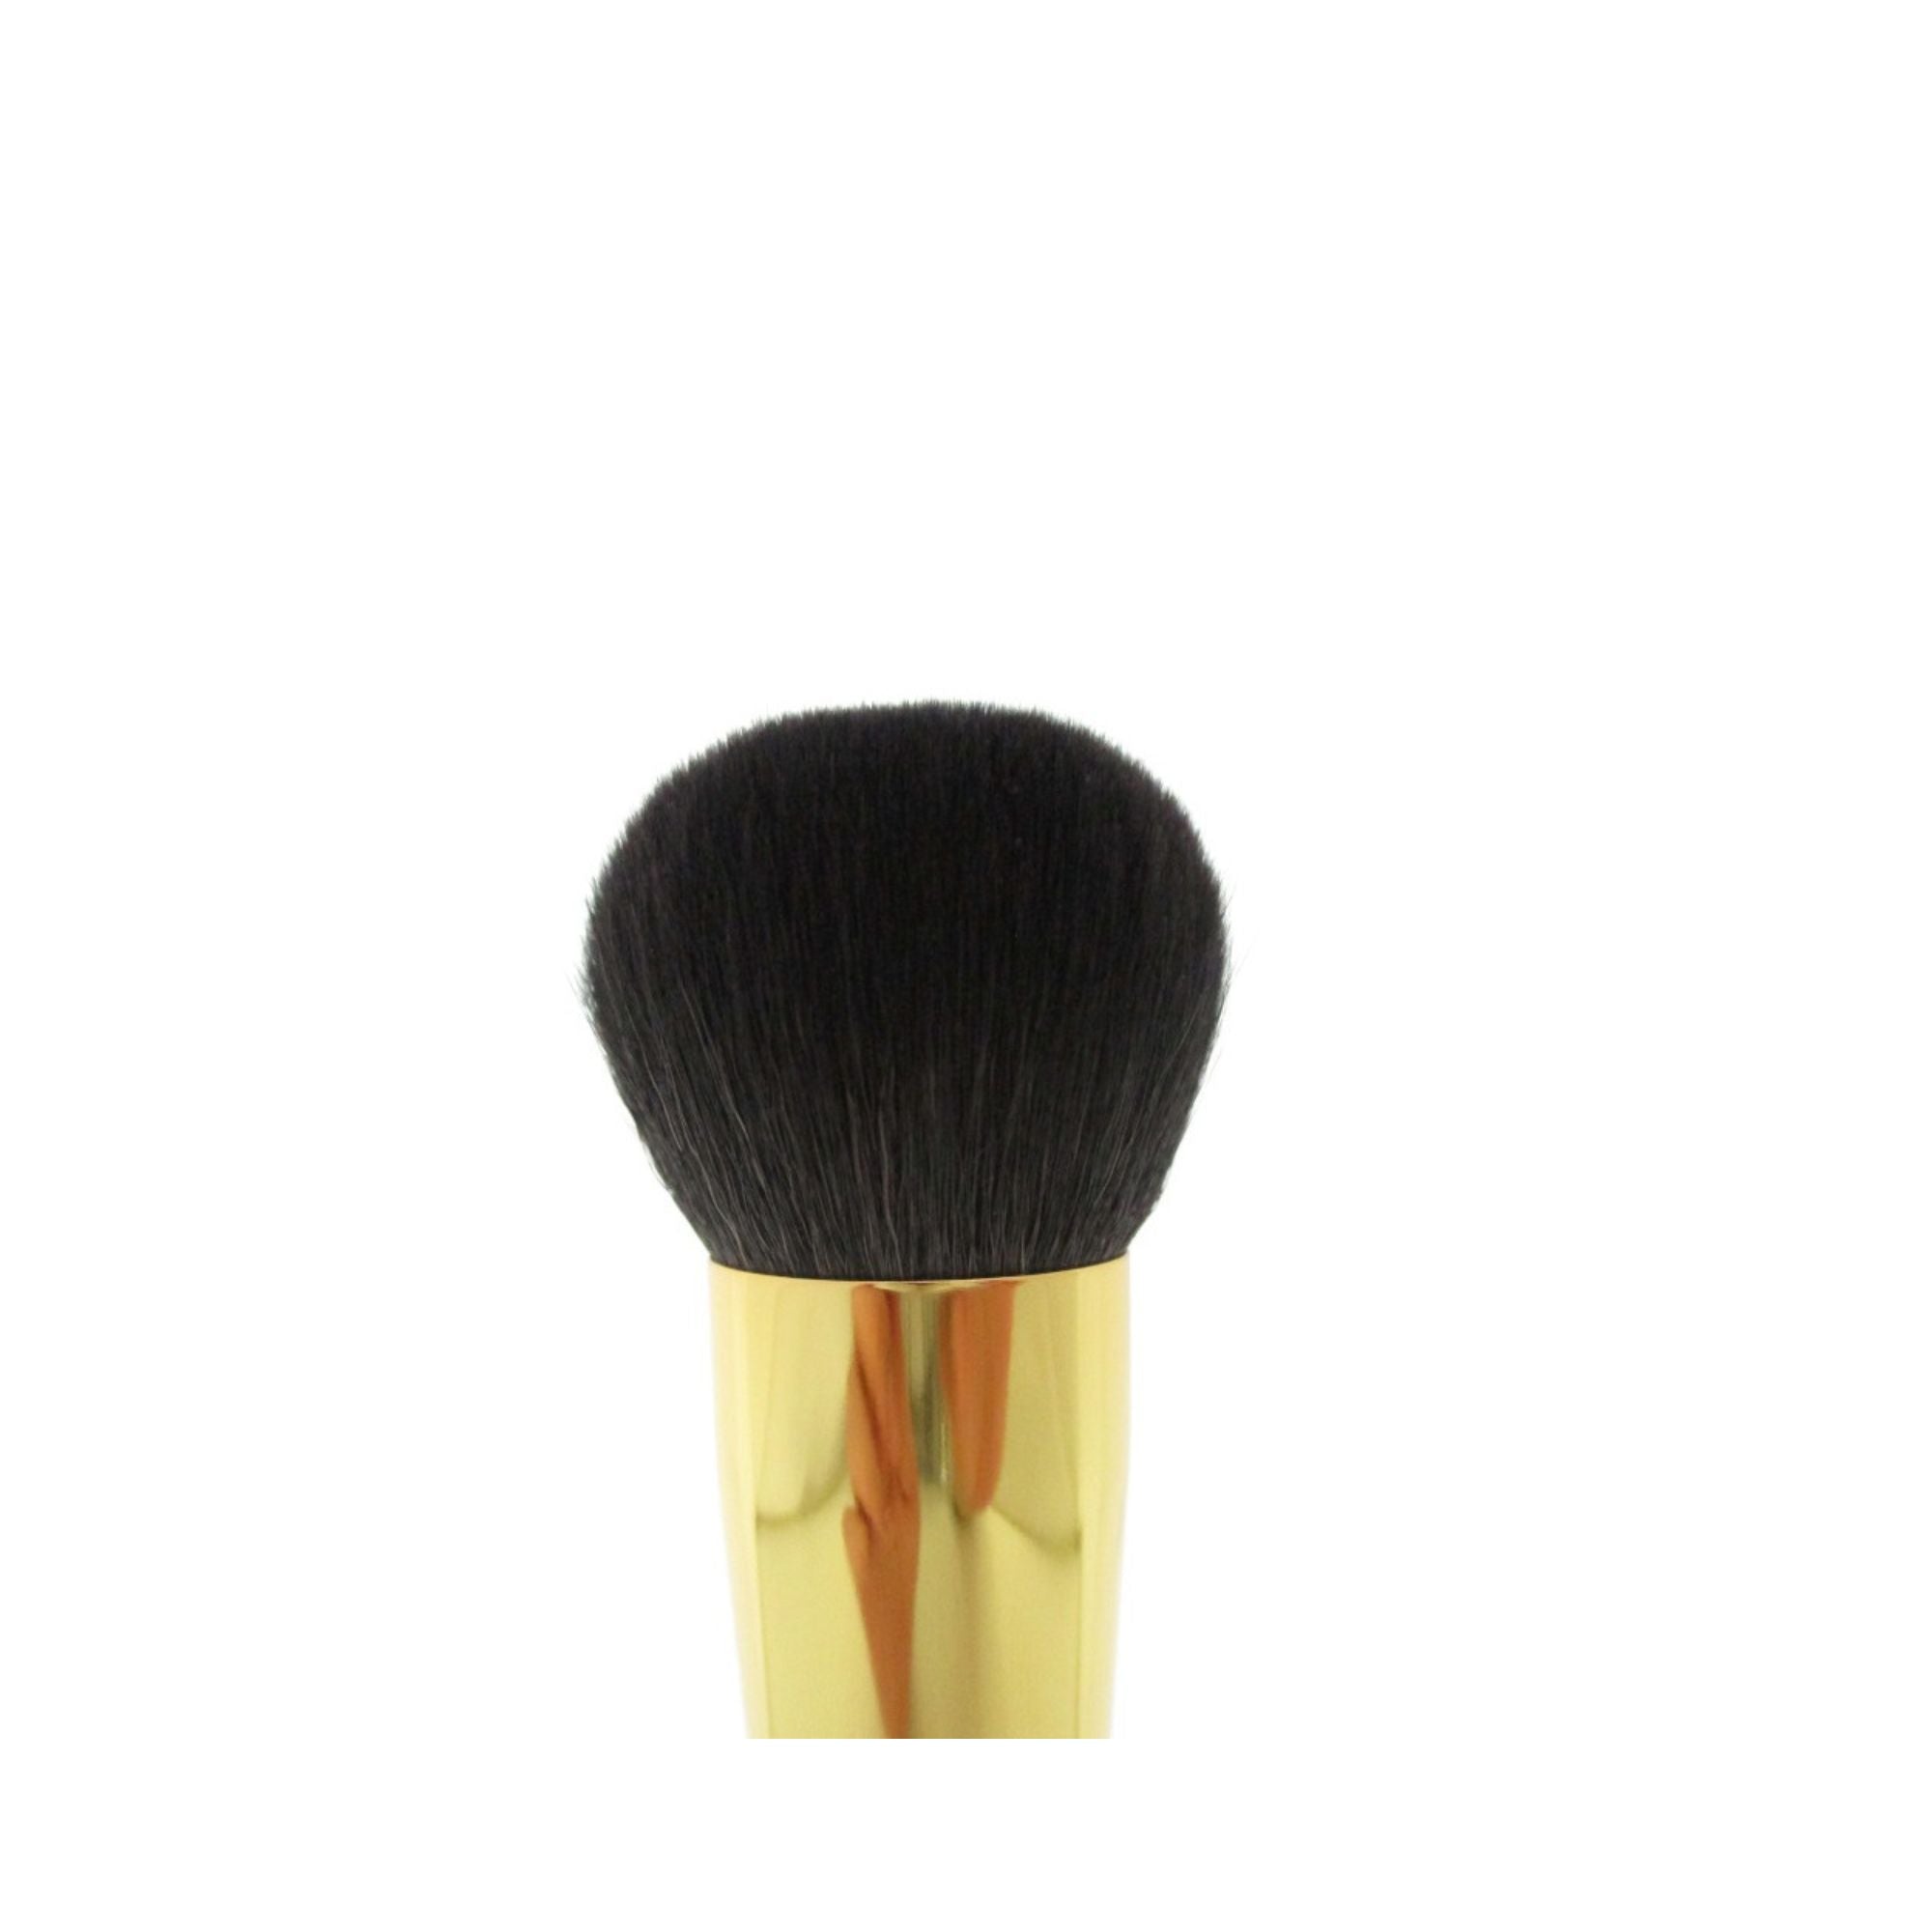 Eihodo WP PC-1 Puff Brush, Kingyo (Goldfish) Makie - Fude Beauty, Japanese Makeup Brushes